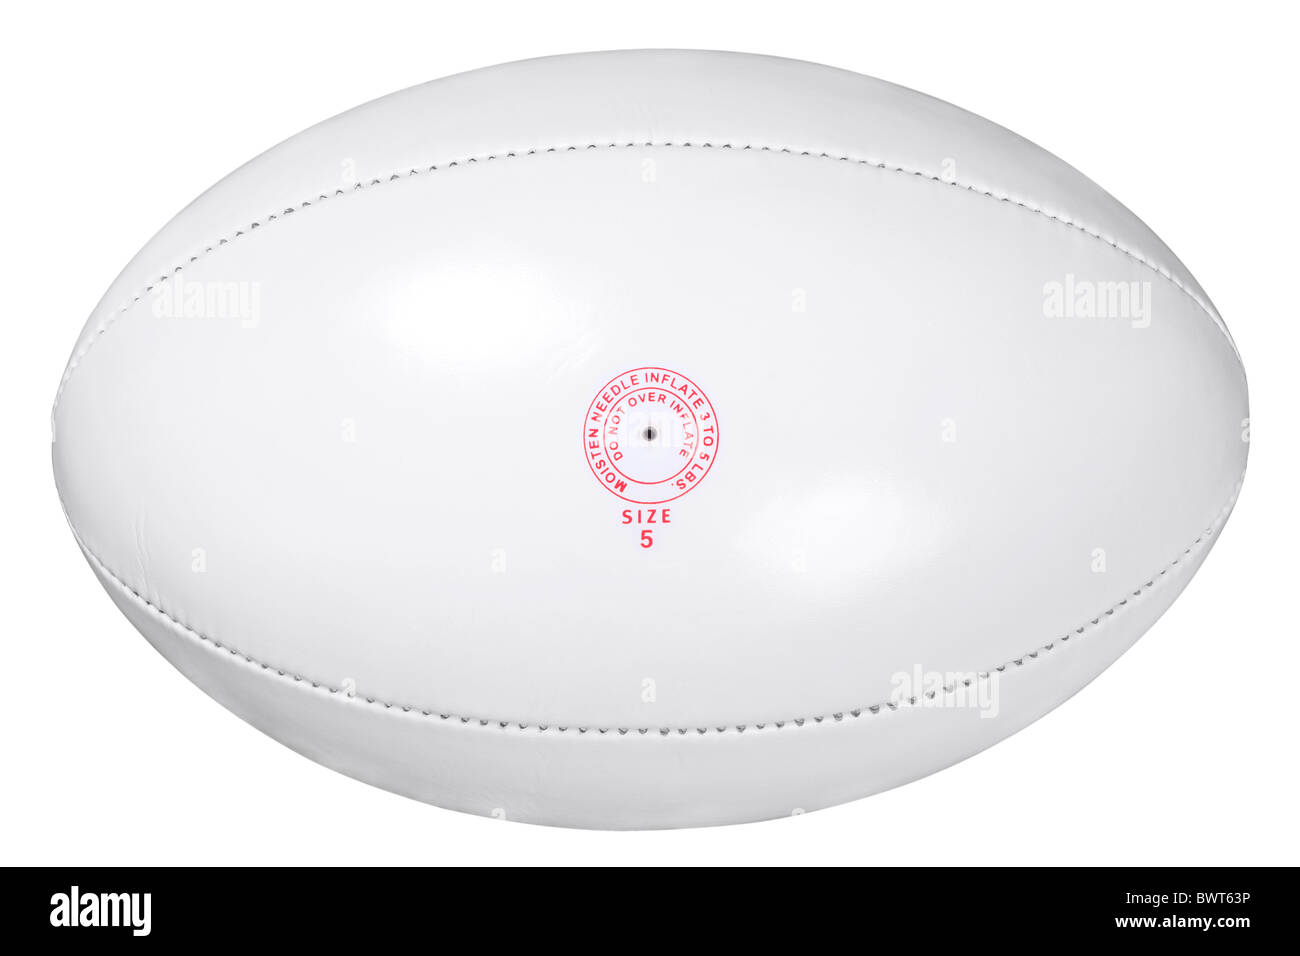 Photo d'un ballon de rugby en cuir blanc isolé sur fond blanc avec clipping path fait à l'aide d'outil Plume. Banque D'Images